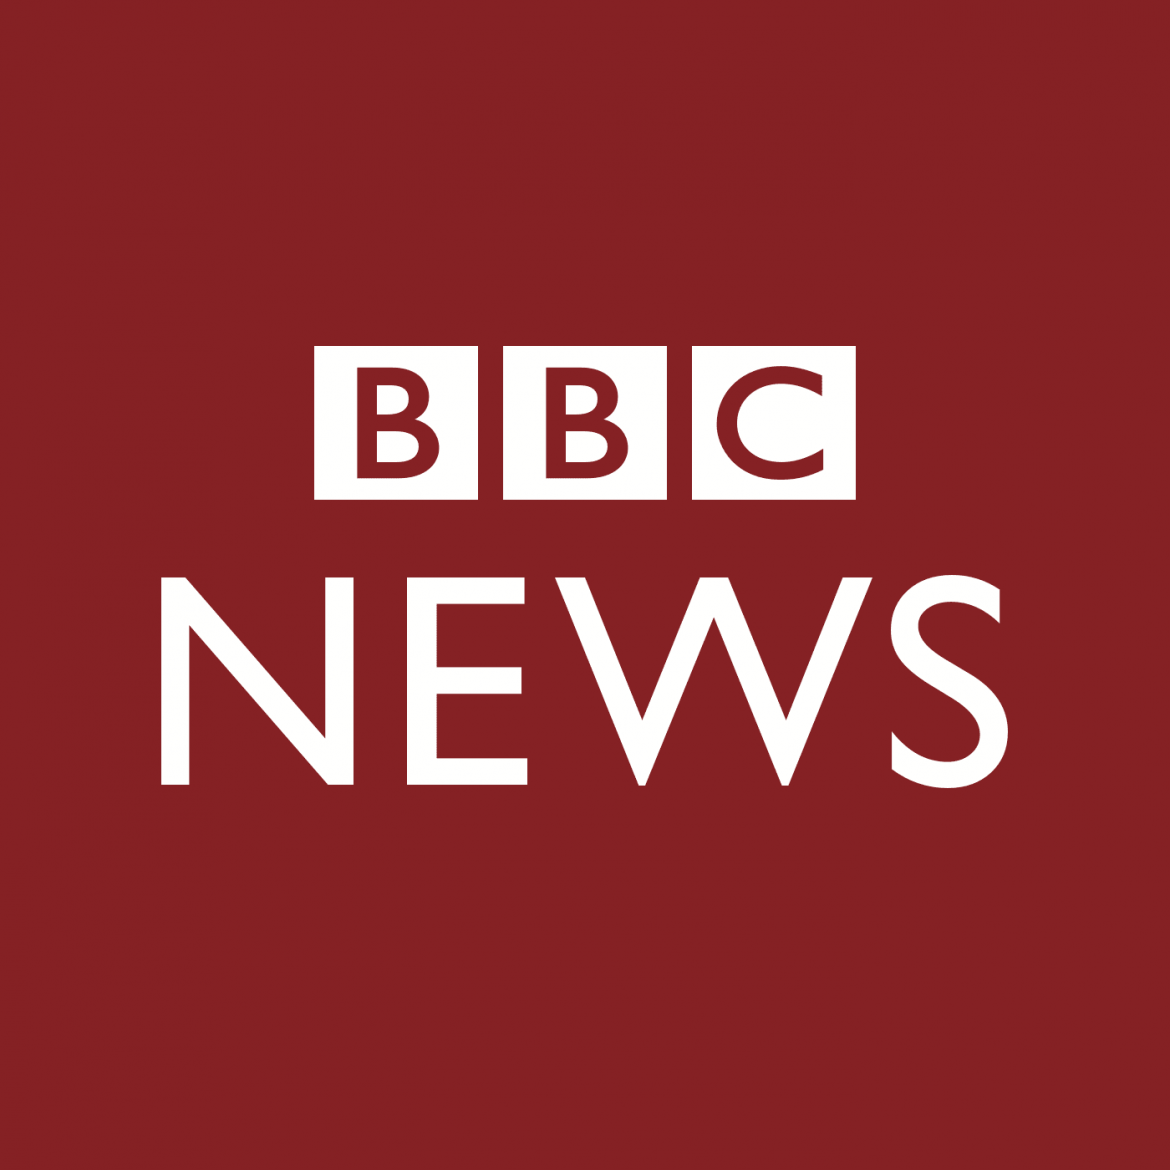 Kina zabranila BBC zbog kršenja istine